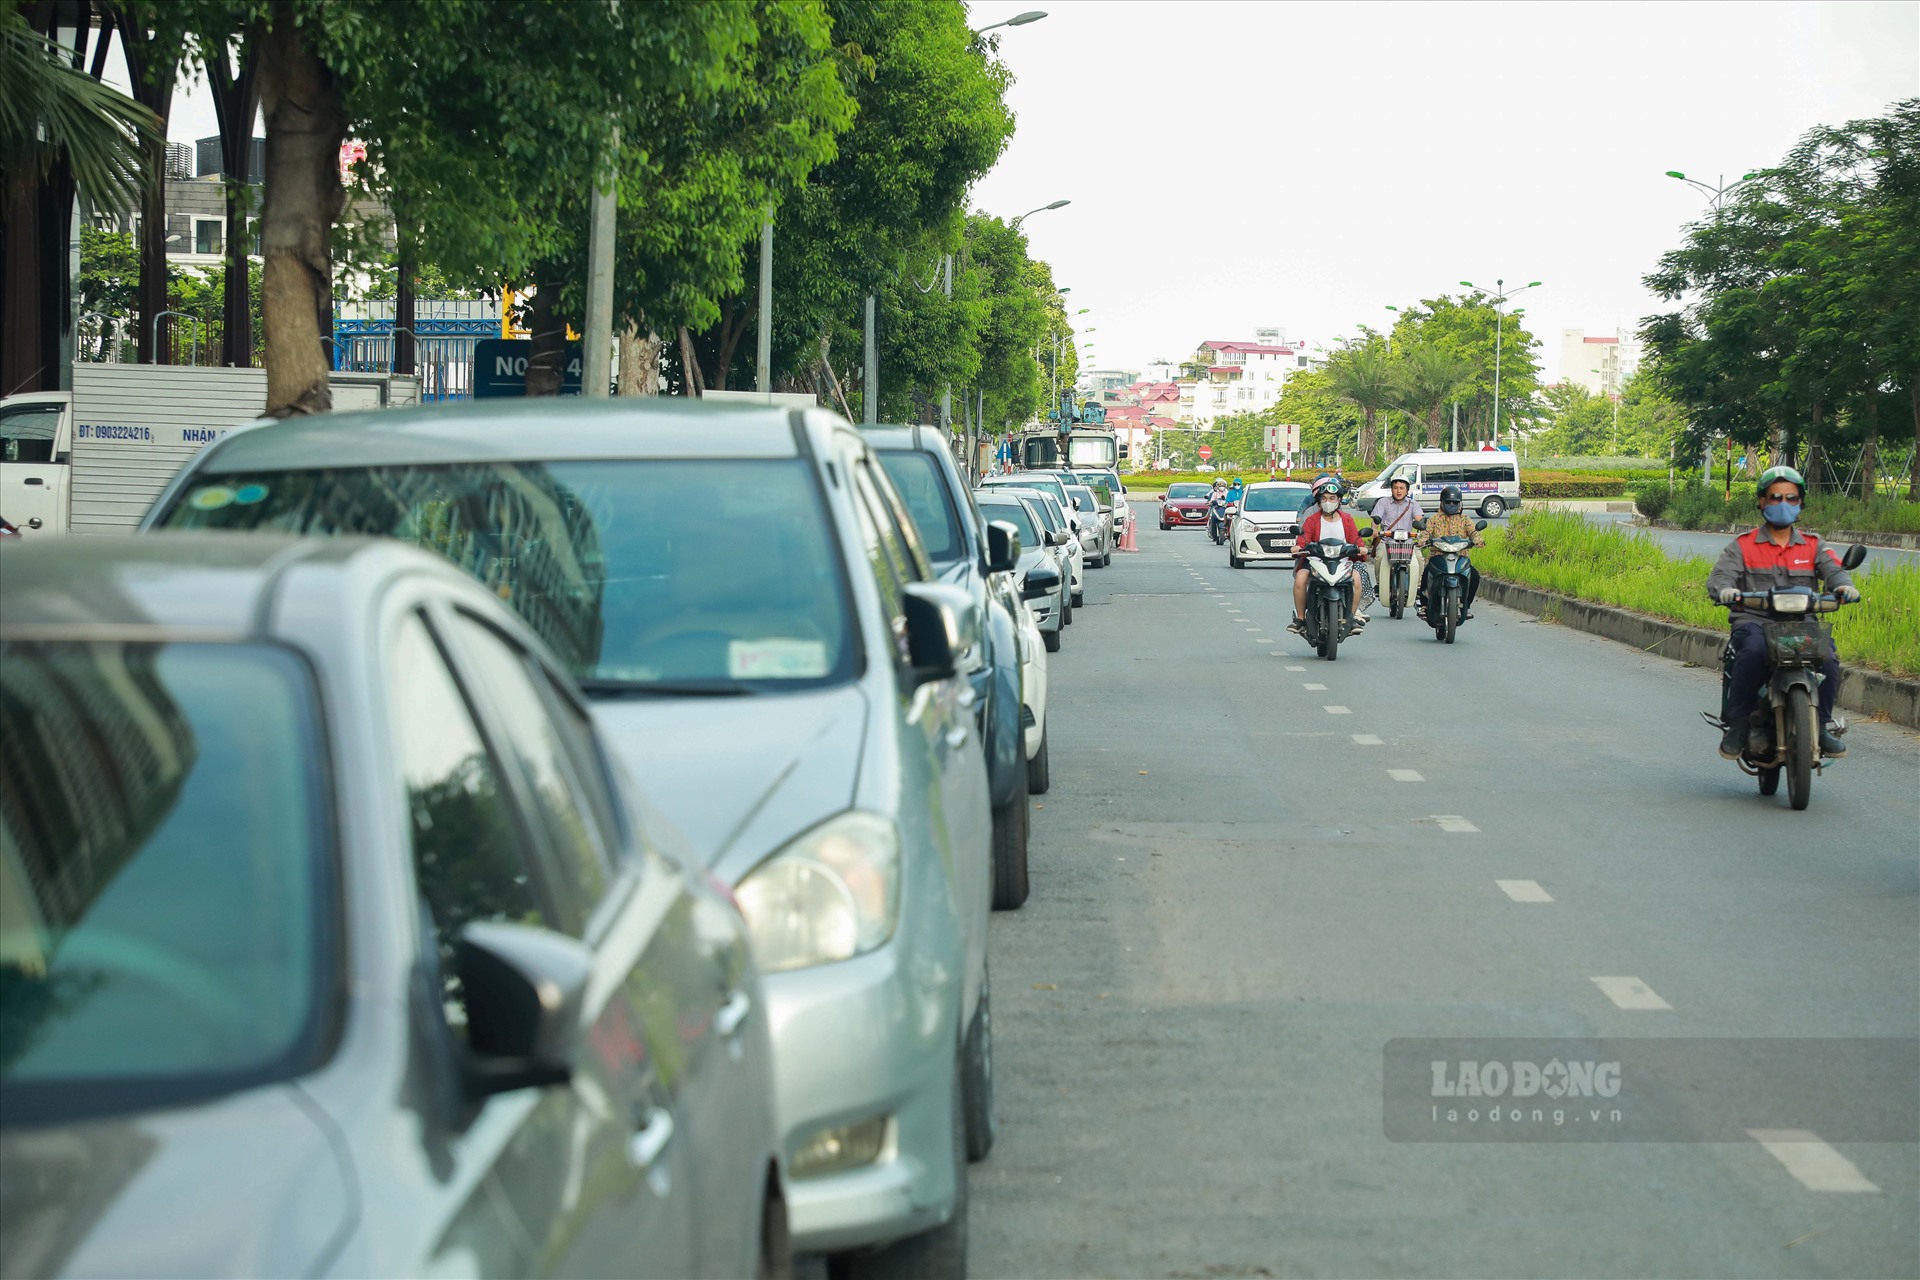 Không khó để bắt gặp hình ảnh hàng dài xe cộ, cả xe máy và ôtô đậu kín một làn đường tại KĐT Ngoại giao đoàn.